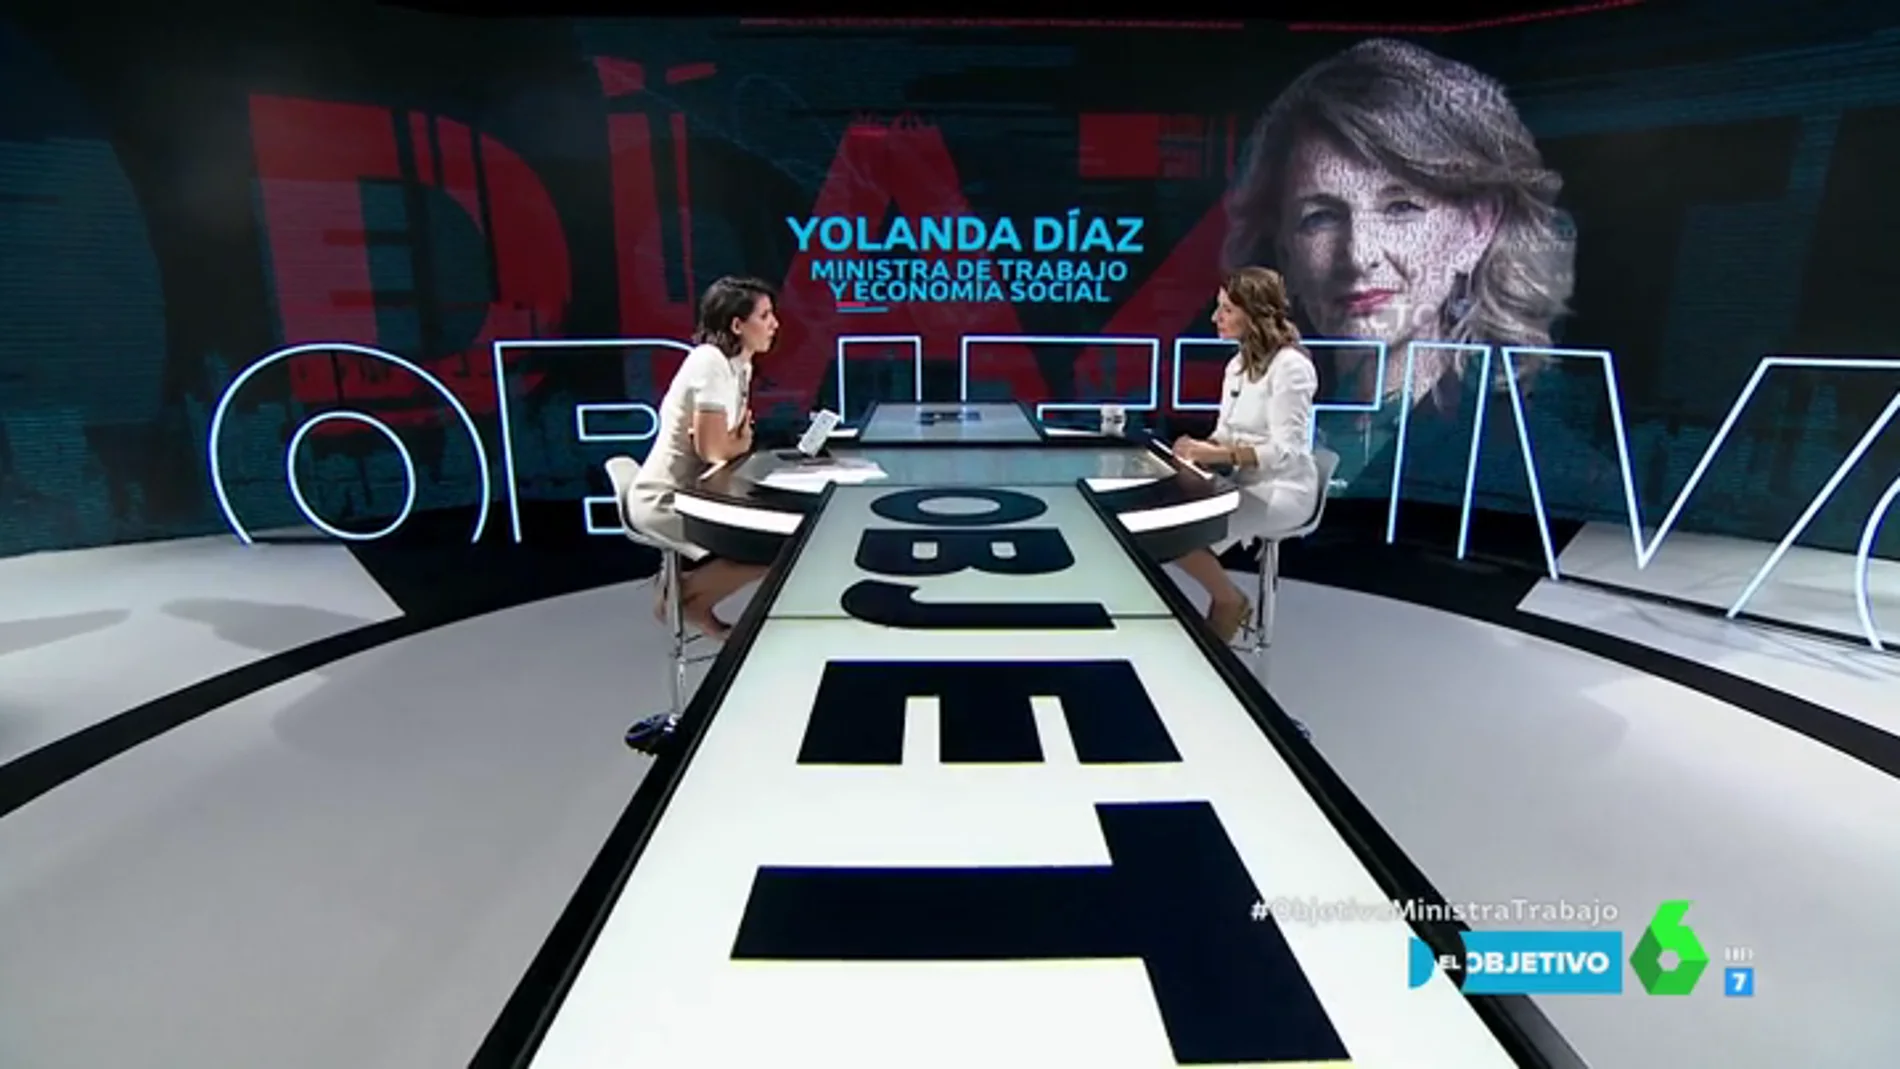 Estas son las medidas que propone la ministra Yolanda Díaz para crear empleo "y de calidad" en España